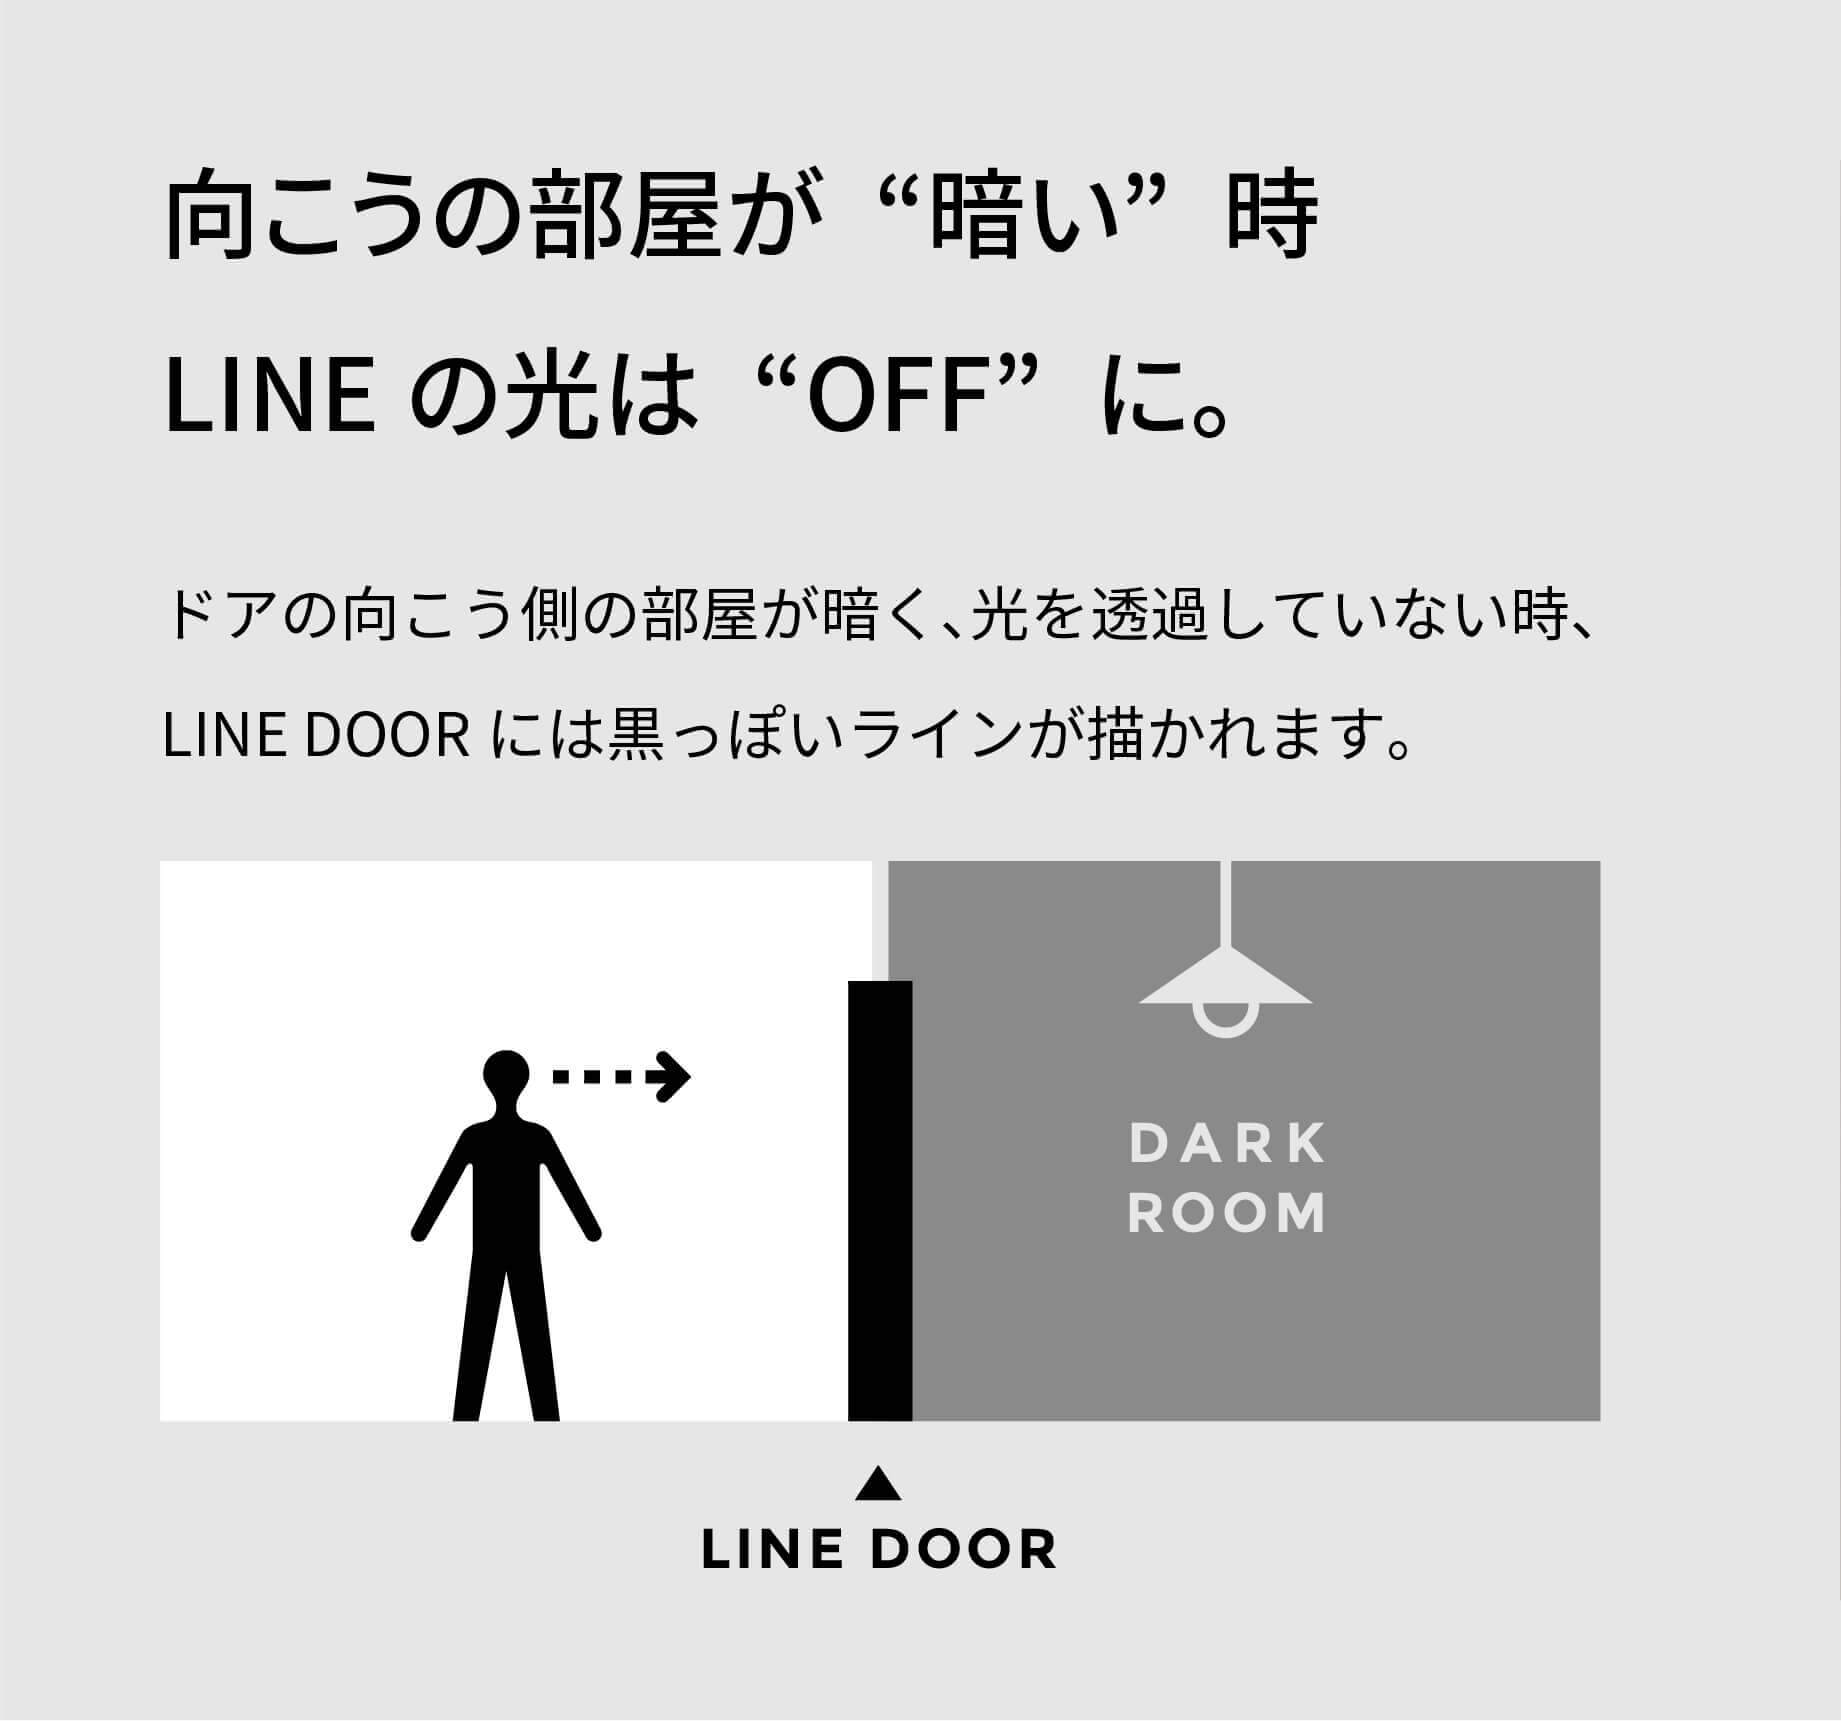 向こうの部屋が“暗い”時LINEの光は“OFF”に。